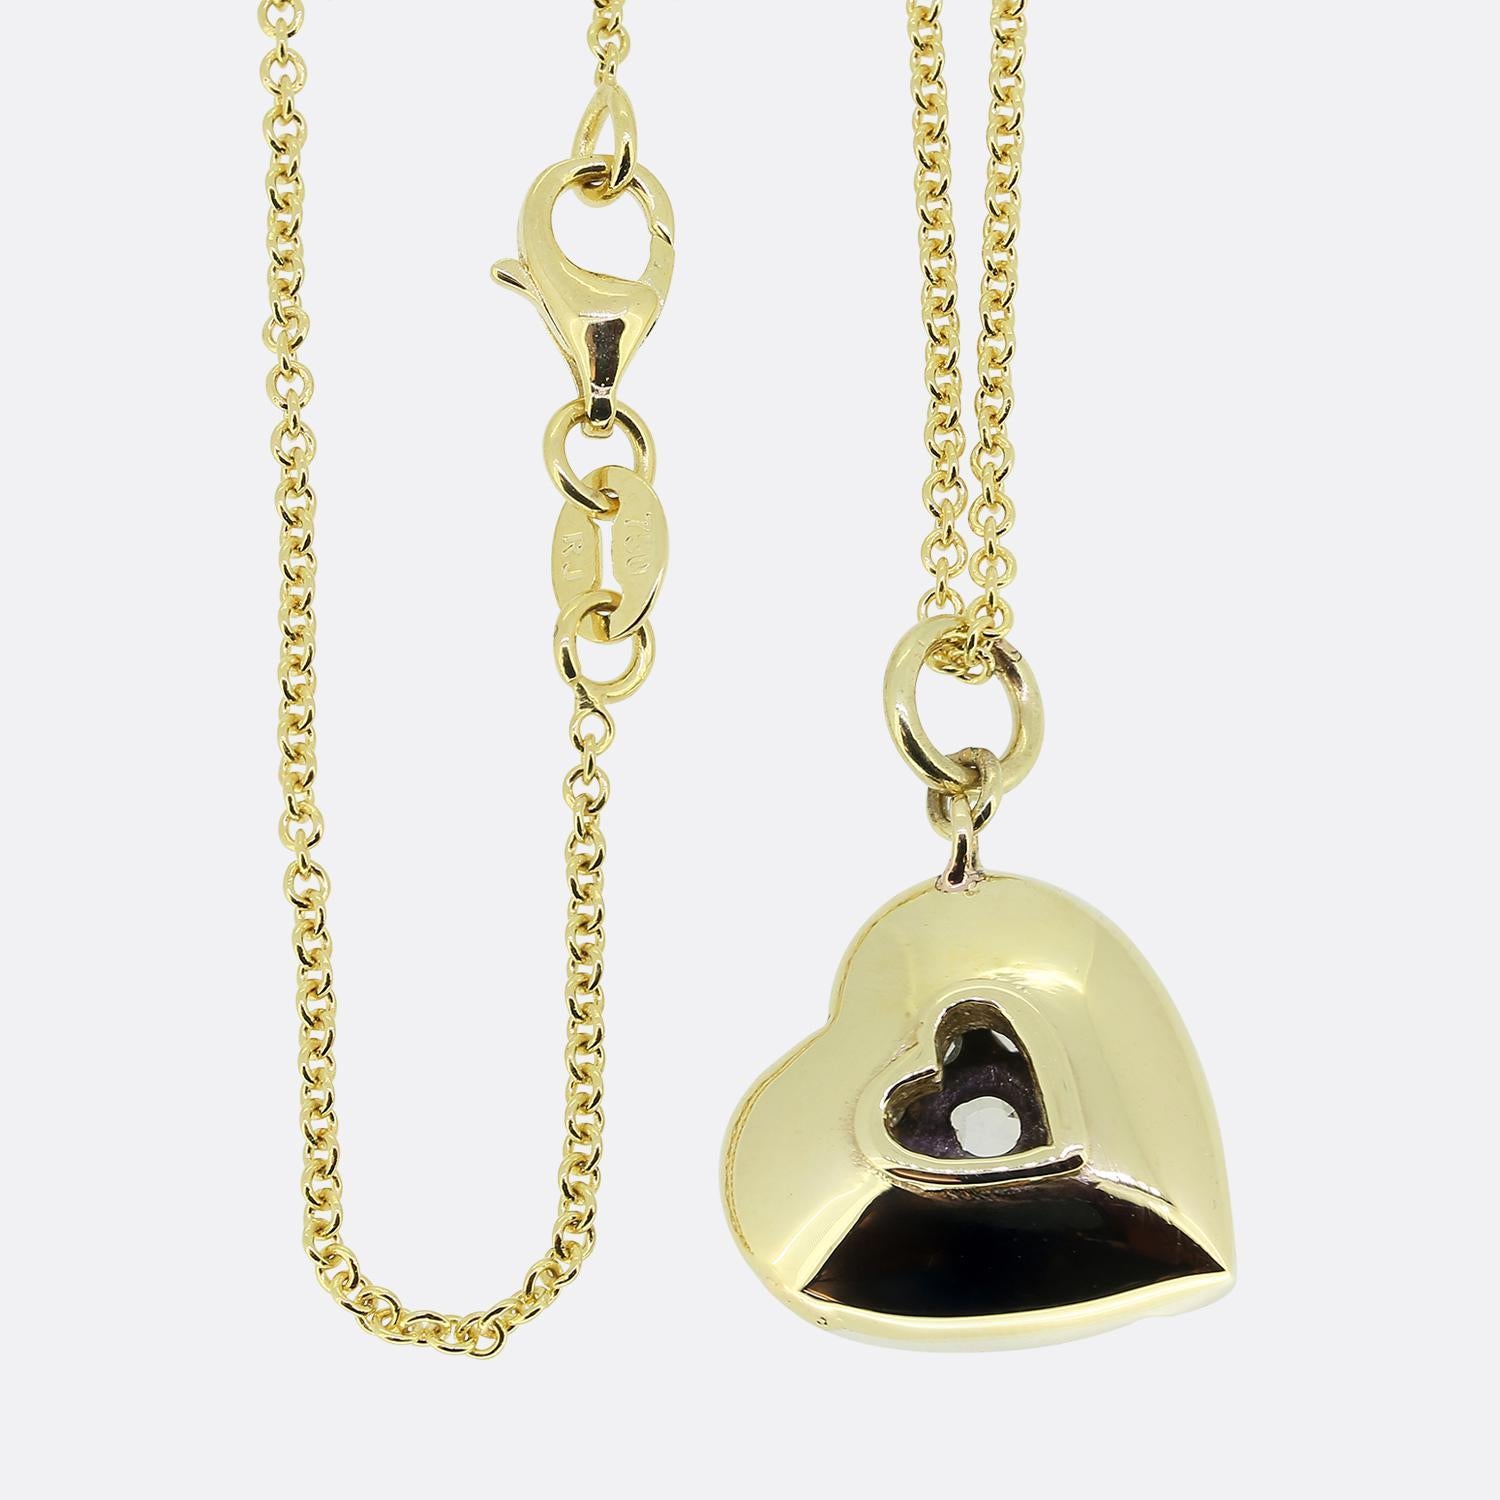 Women's or Men's Vintage Rose Cut Diamond Love Heart Pendant Necklace